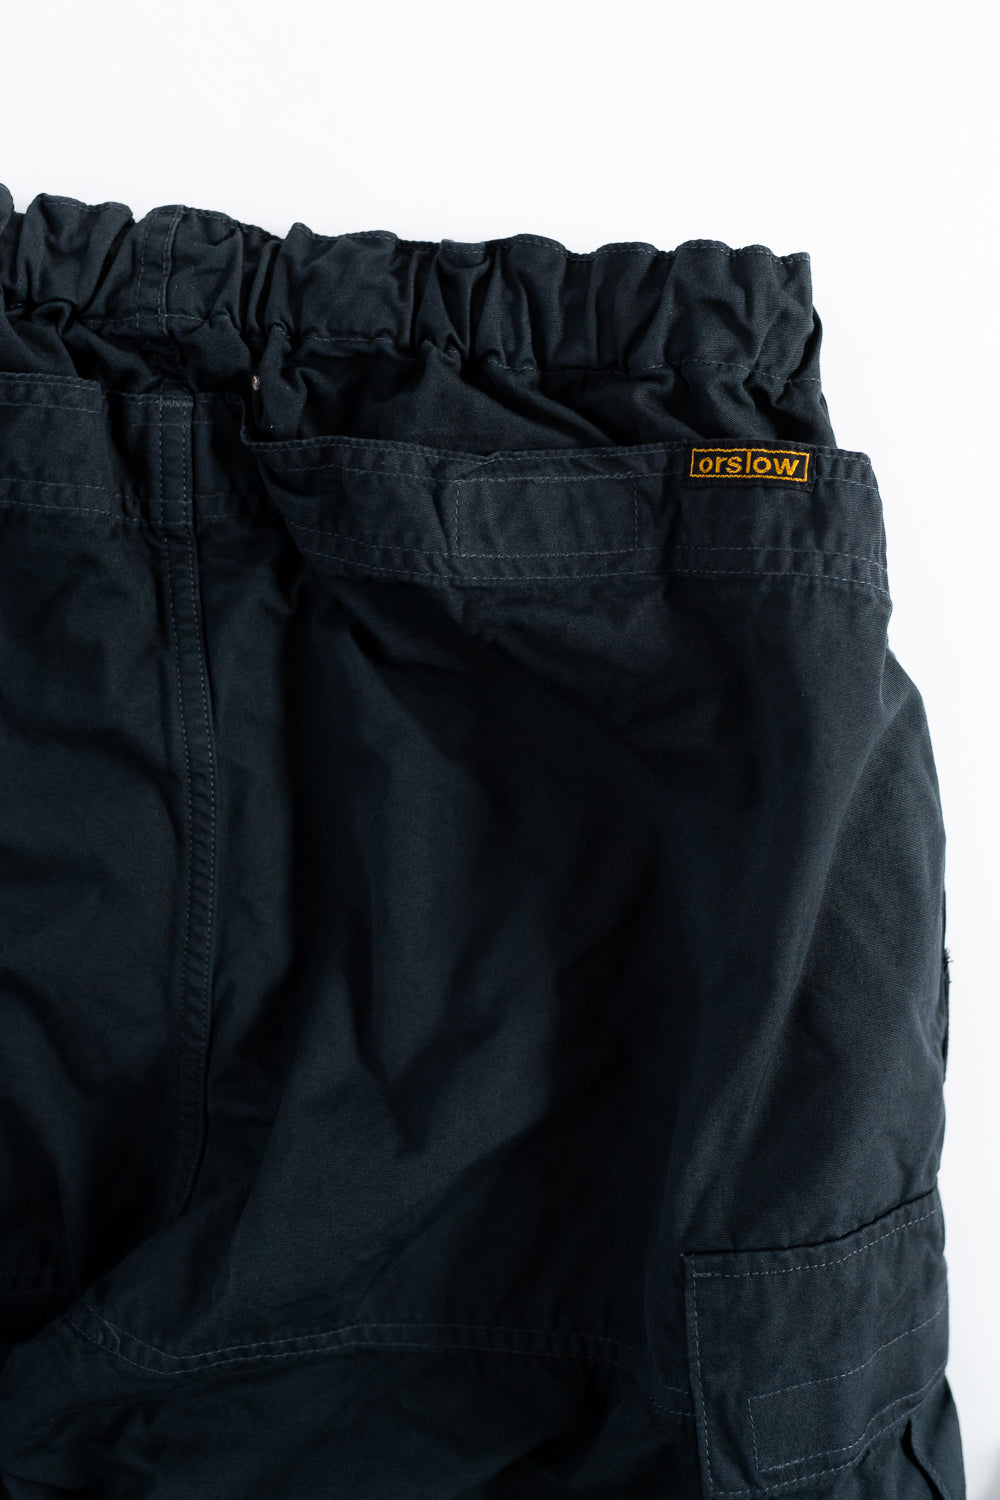 01-5265-60 - Easy Cargo Pants - Charcoal Grey